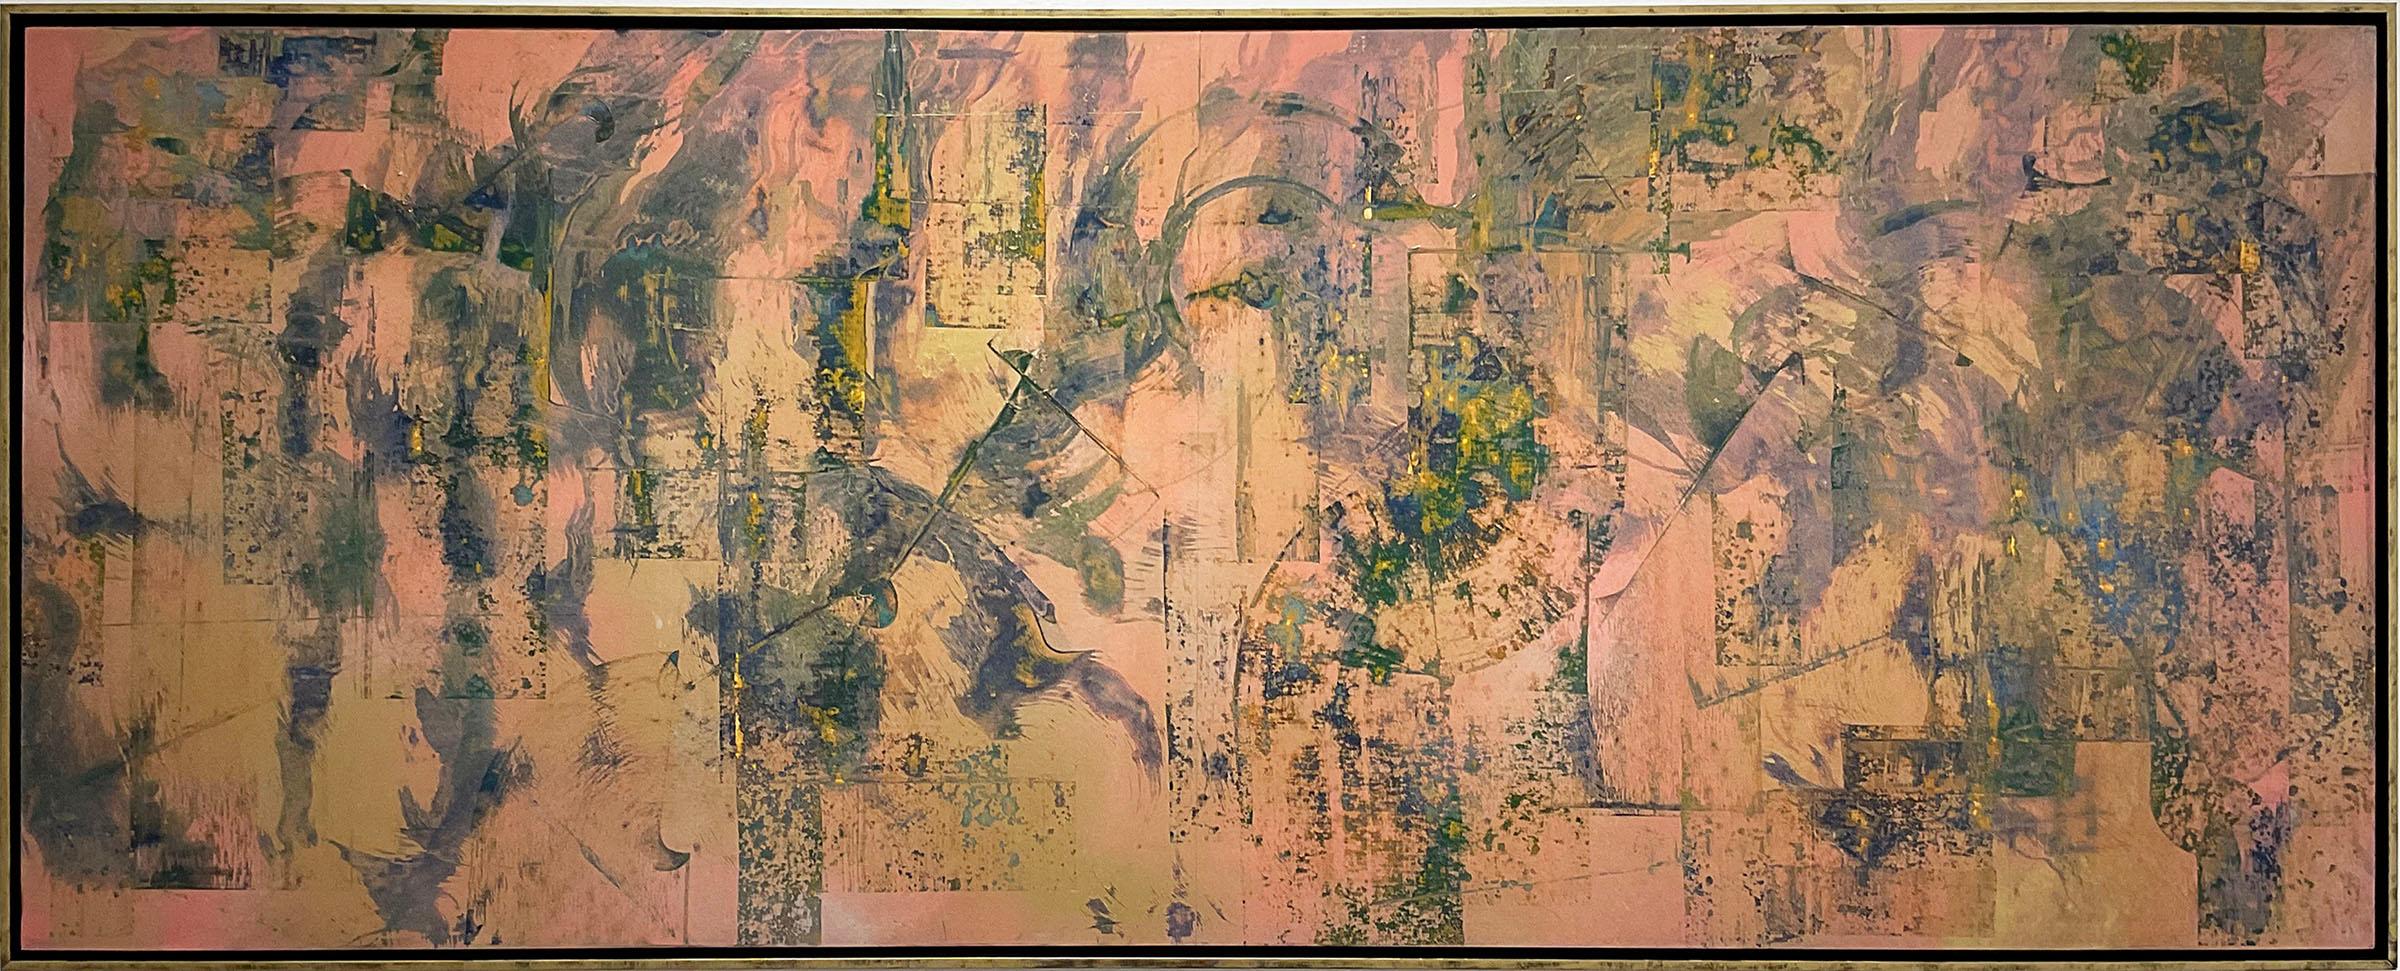 Abstraktes Expressionismus-Gemälde im Pfirsich- und Goldstil von Mind and Matter